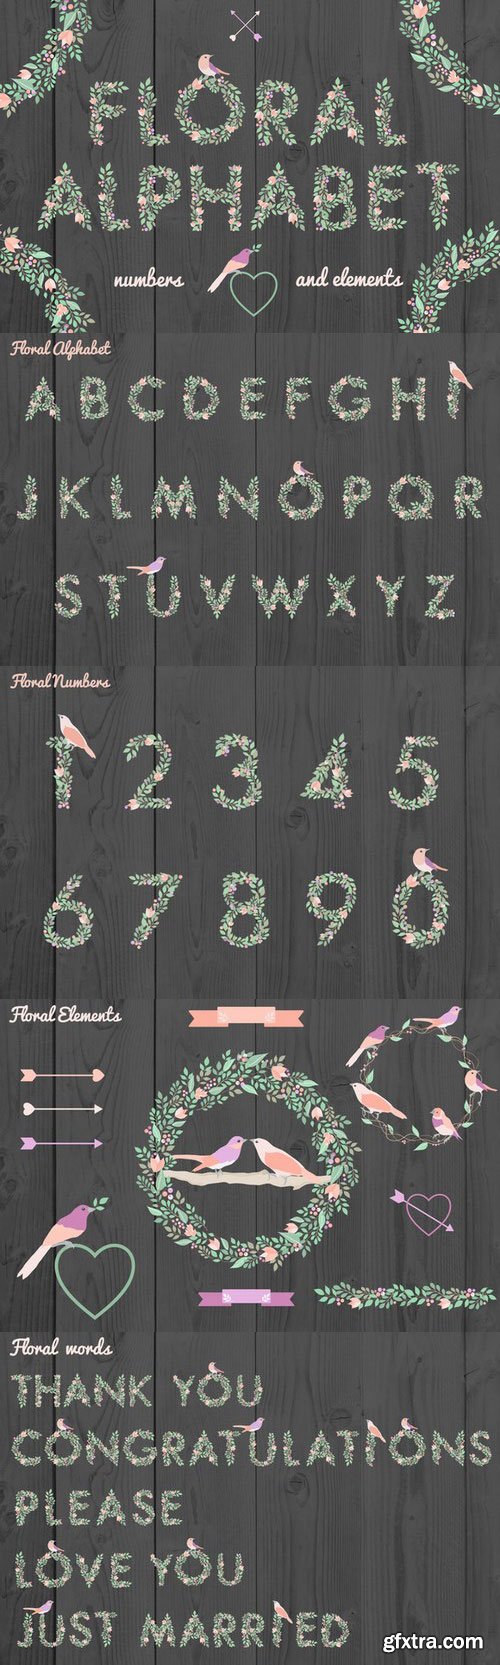 CM - Floral alphabet and elements 122819